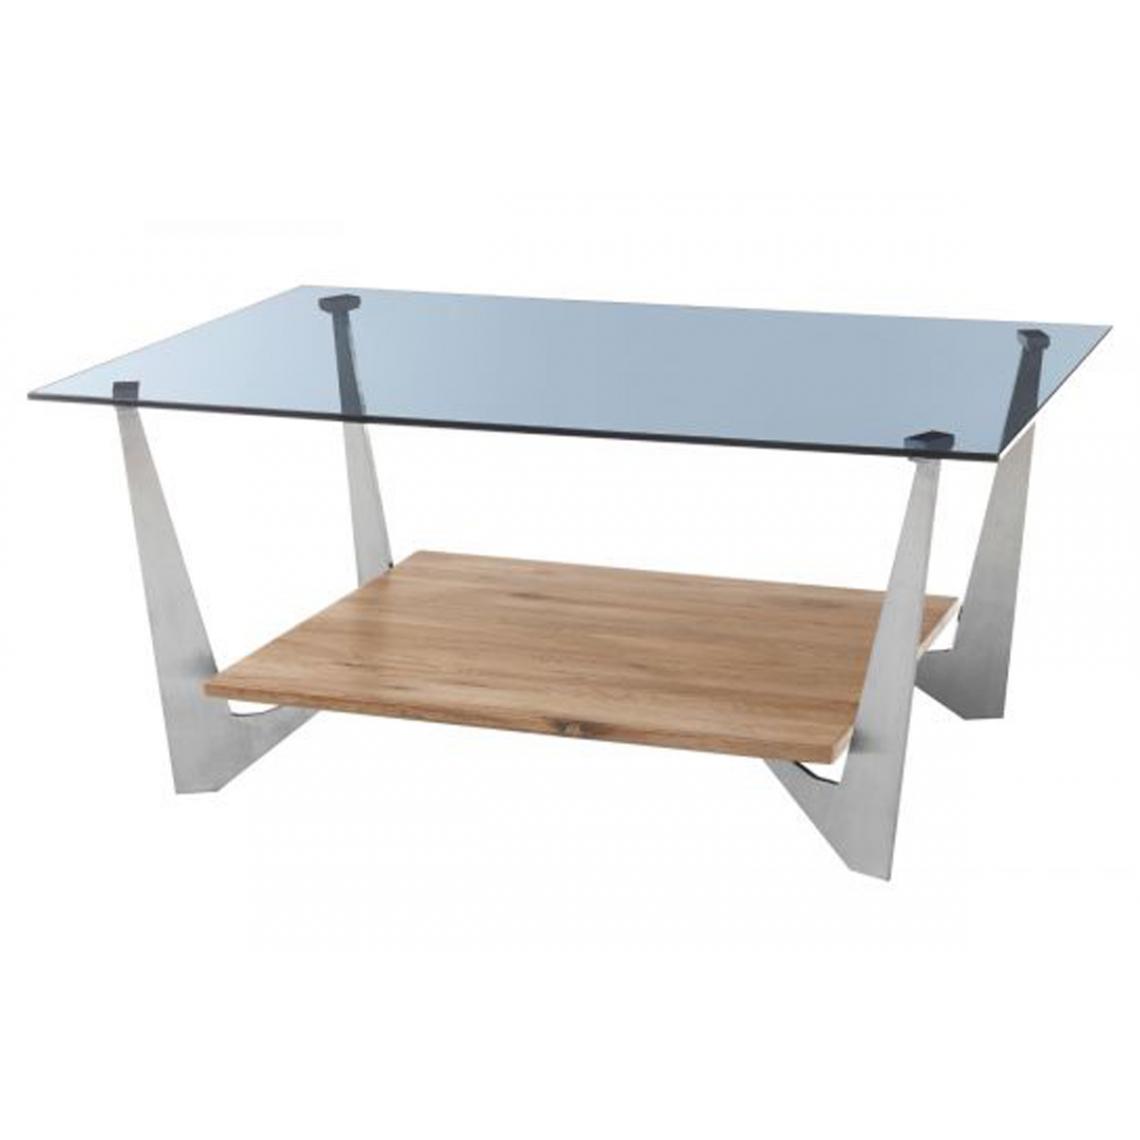 Pegane - Table basse avec rangement en chêne massif huilé et verre gris - L.90 x H.40 x P.60 cm - Tables basses